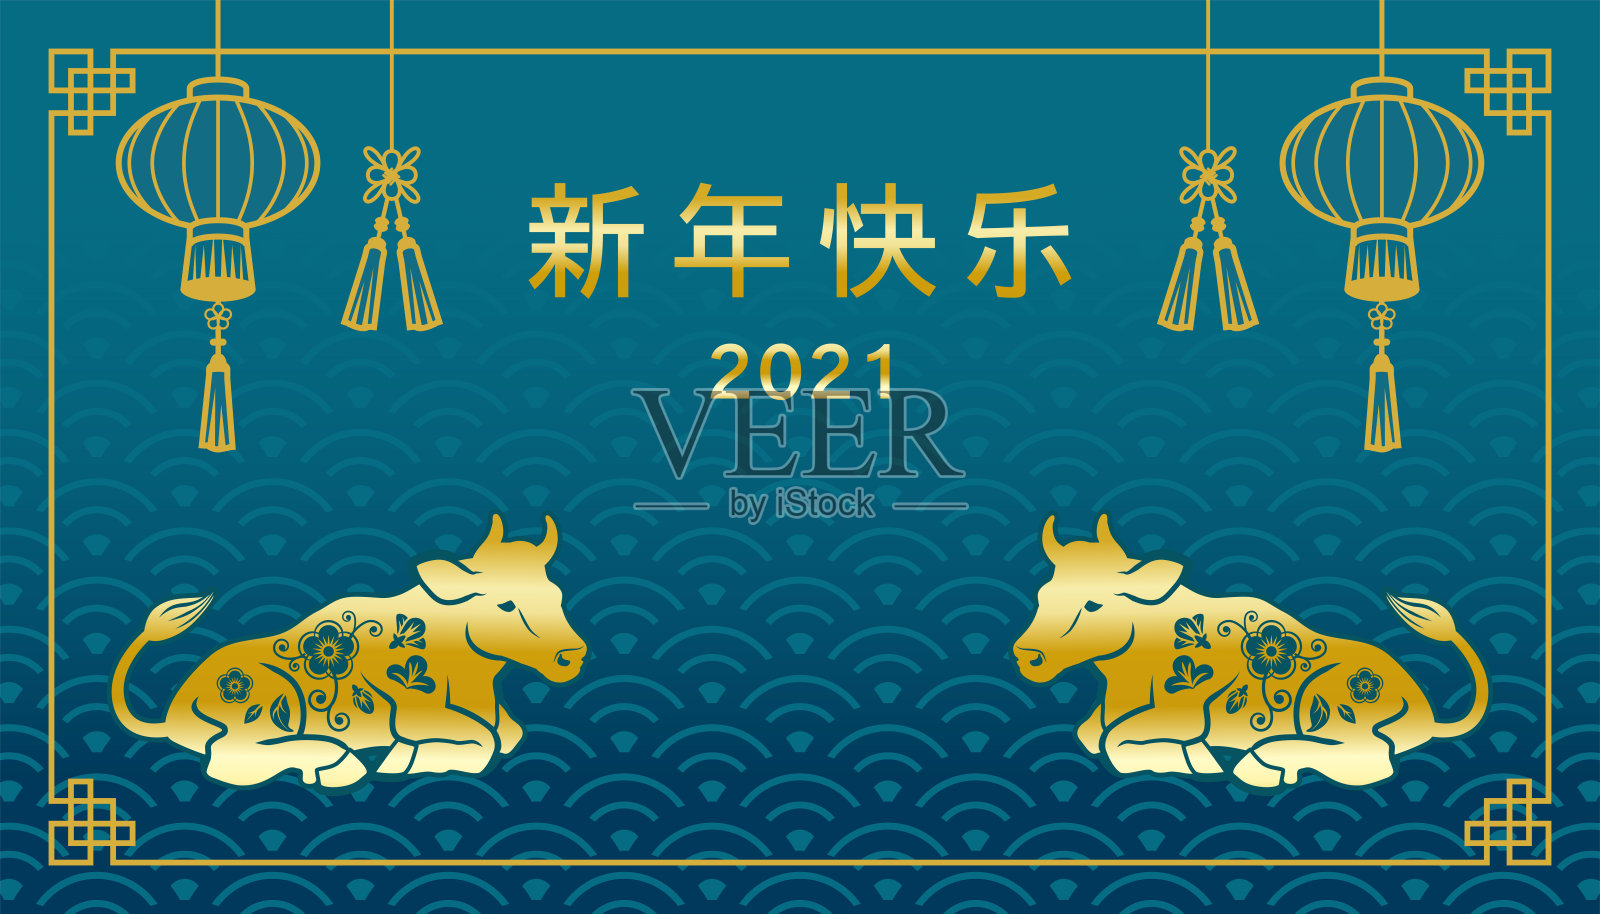 2021年牛年贺年设计——中文意为“新年快乐”，蓝色背景插画图片素材